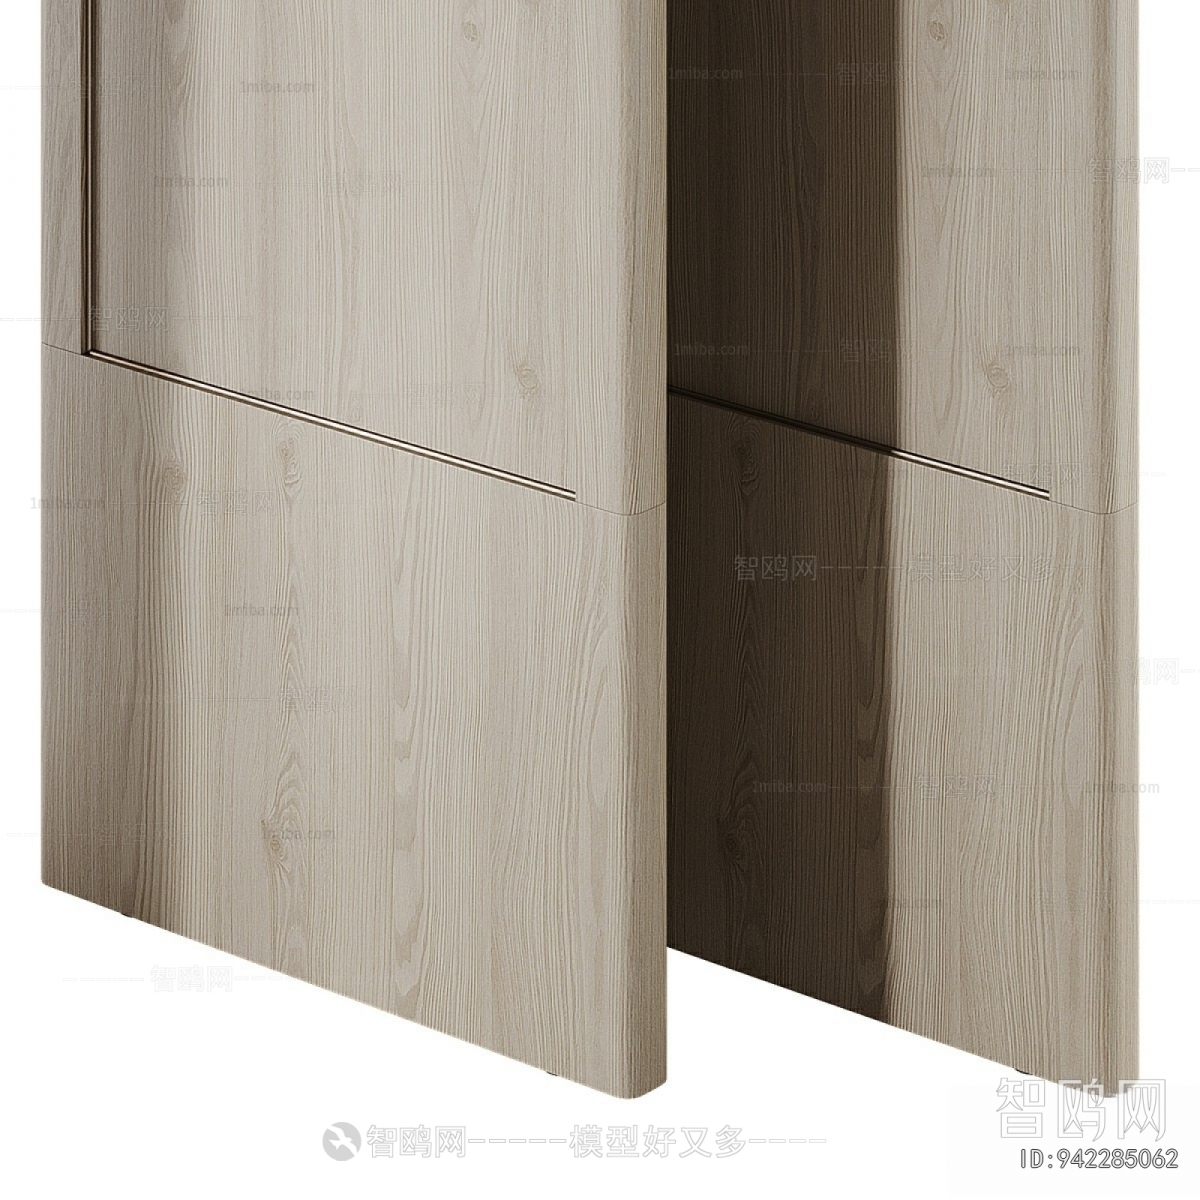 Modern Wooden Screen Partition